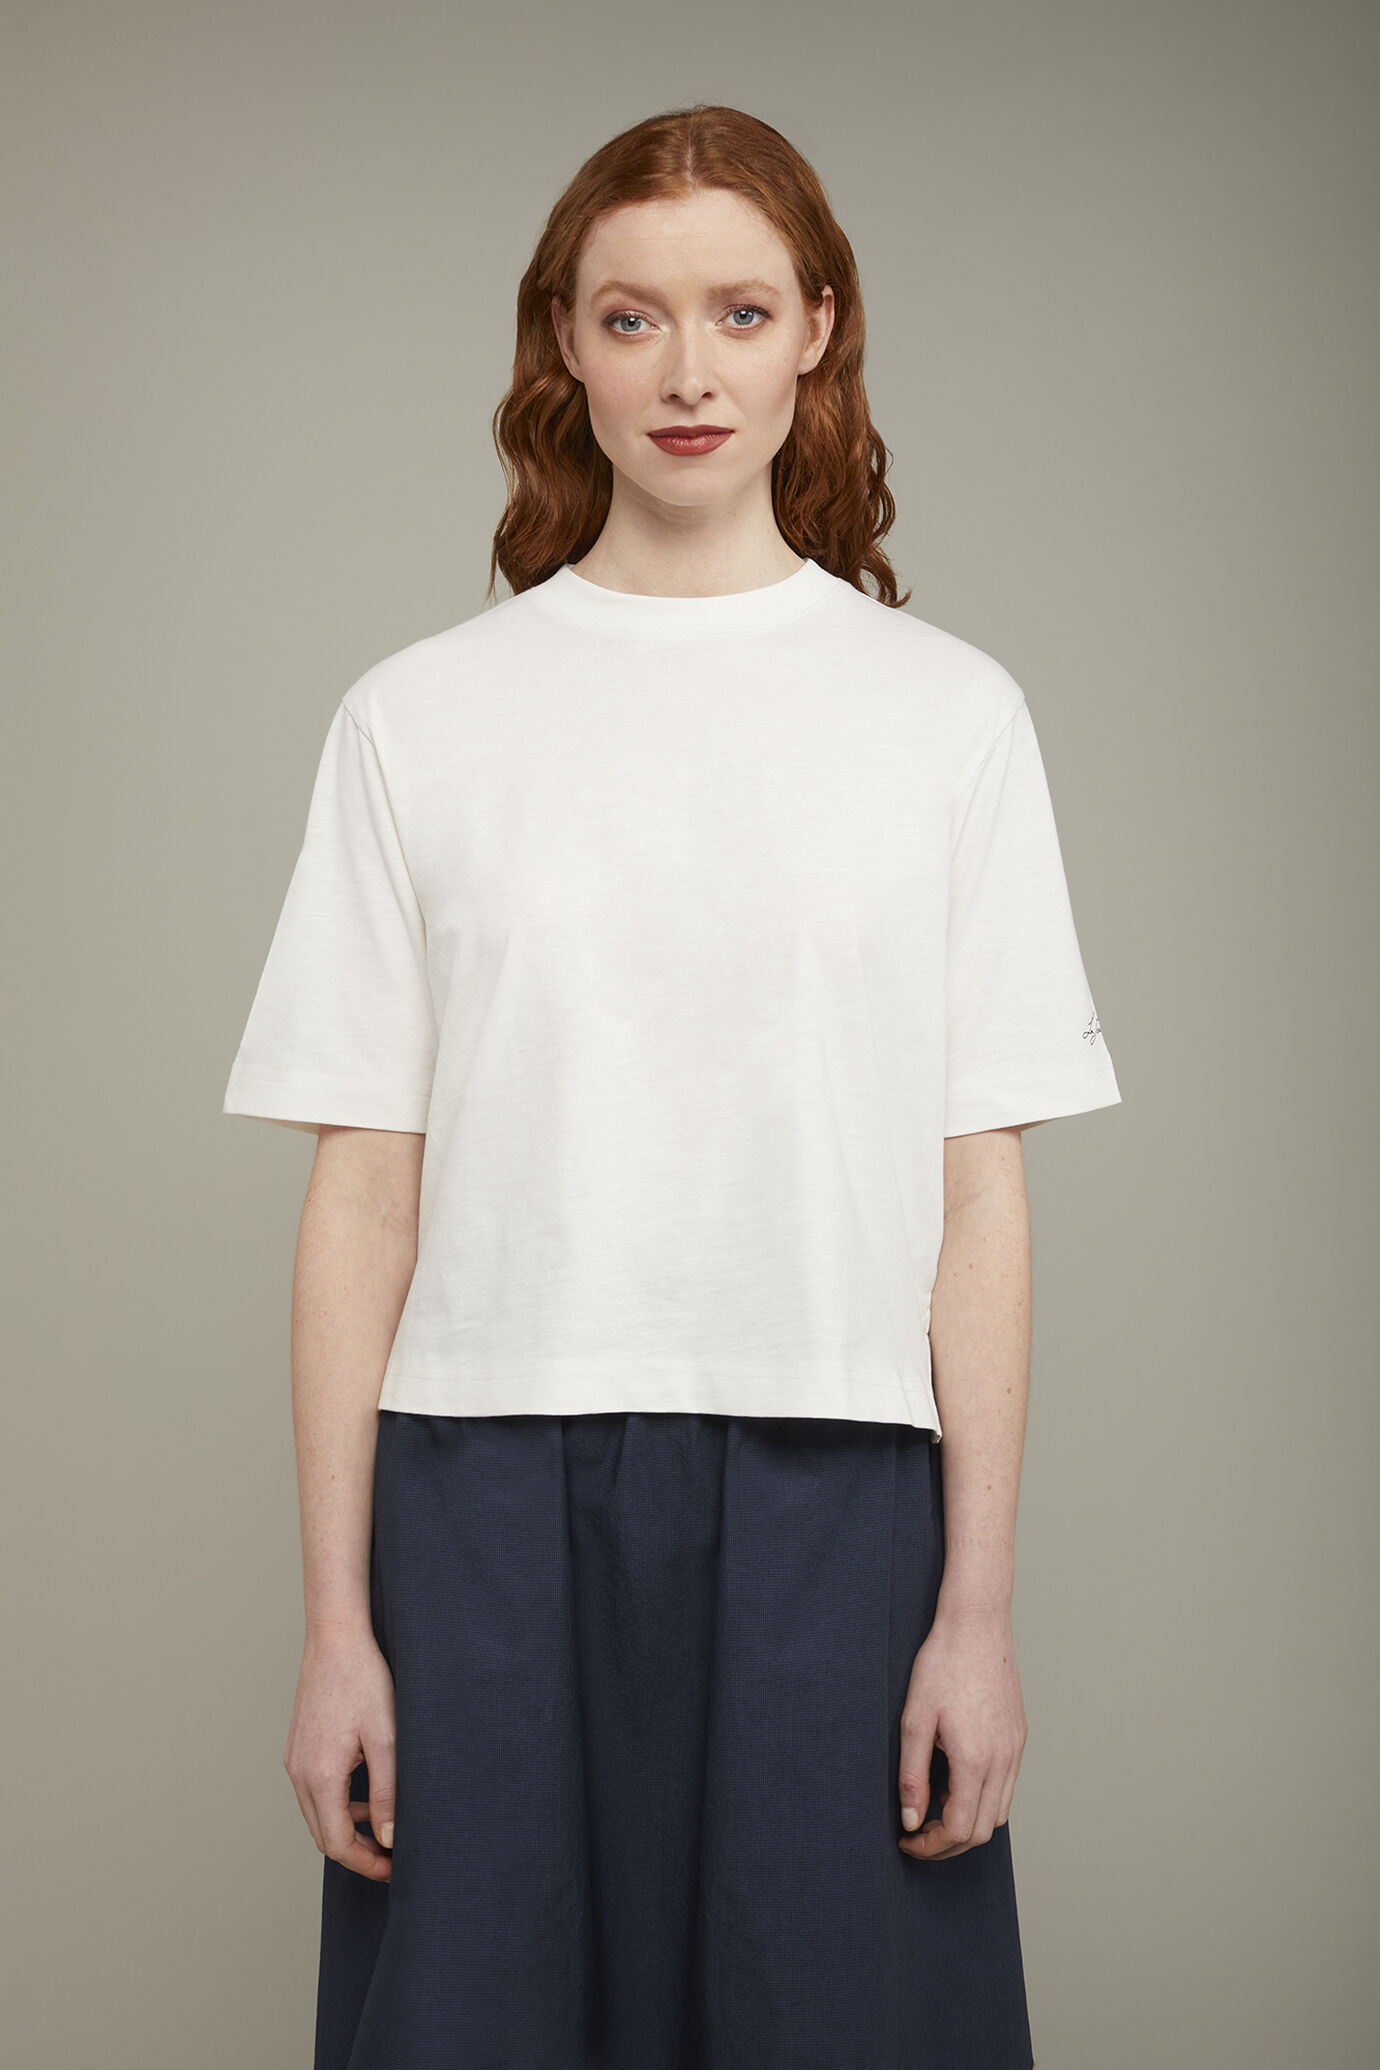 Damen-T-Shirt mit Rundhalsausschnitt aus 100 % Baumwolle in normaler Passform